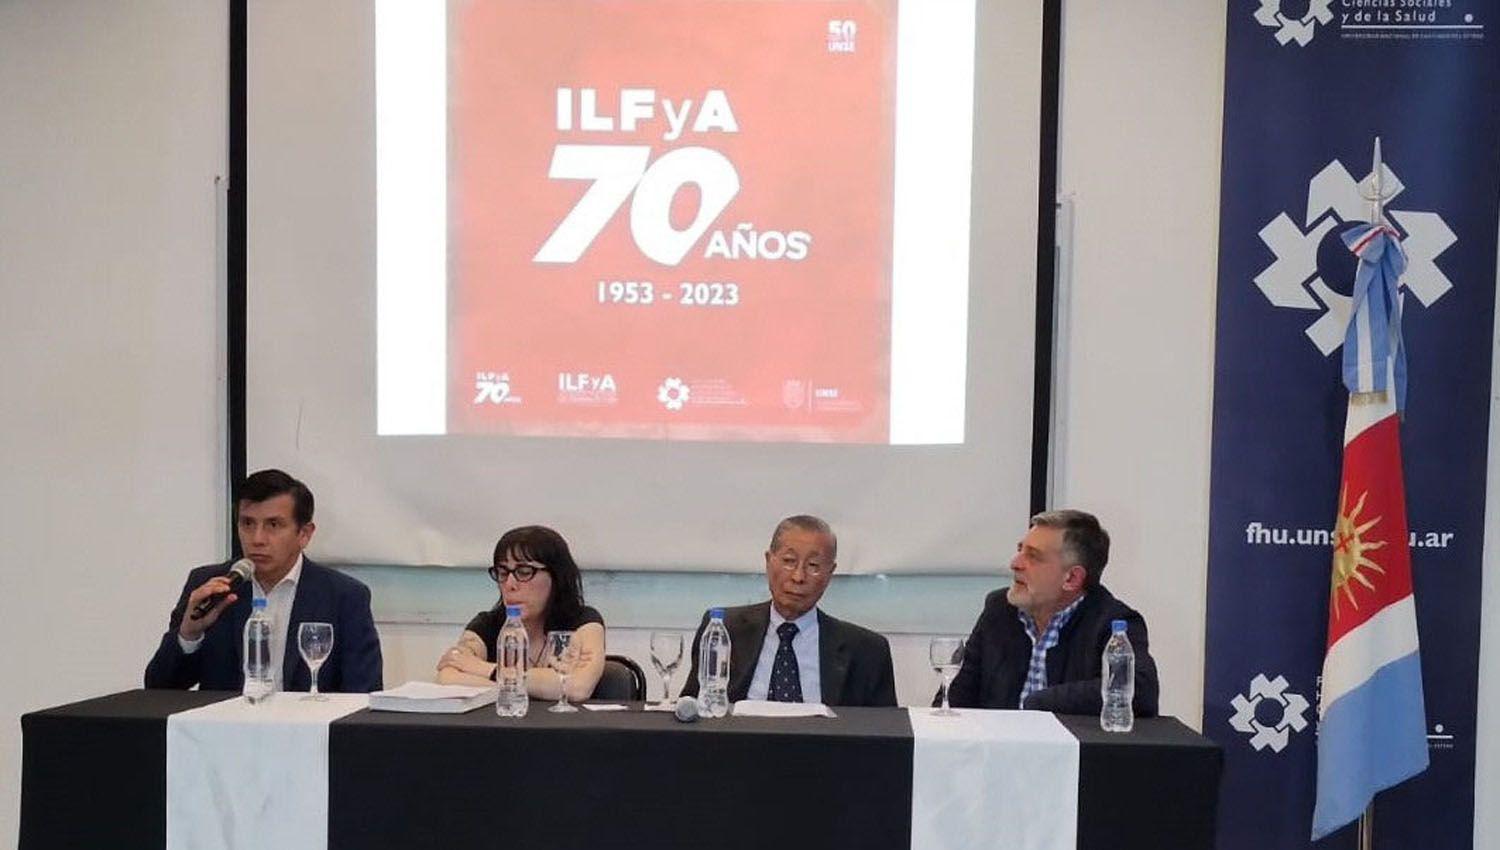 La Facultad de Humanidades celebroacute los 70 antildeos del Ilfya